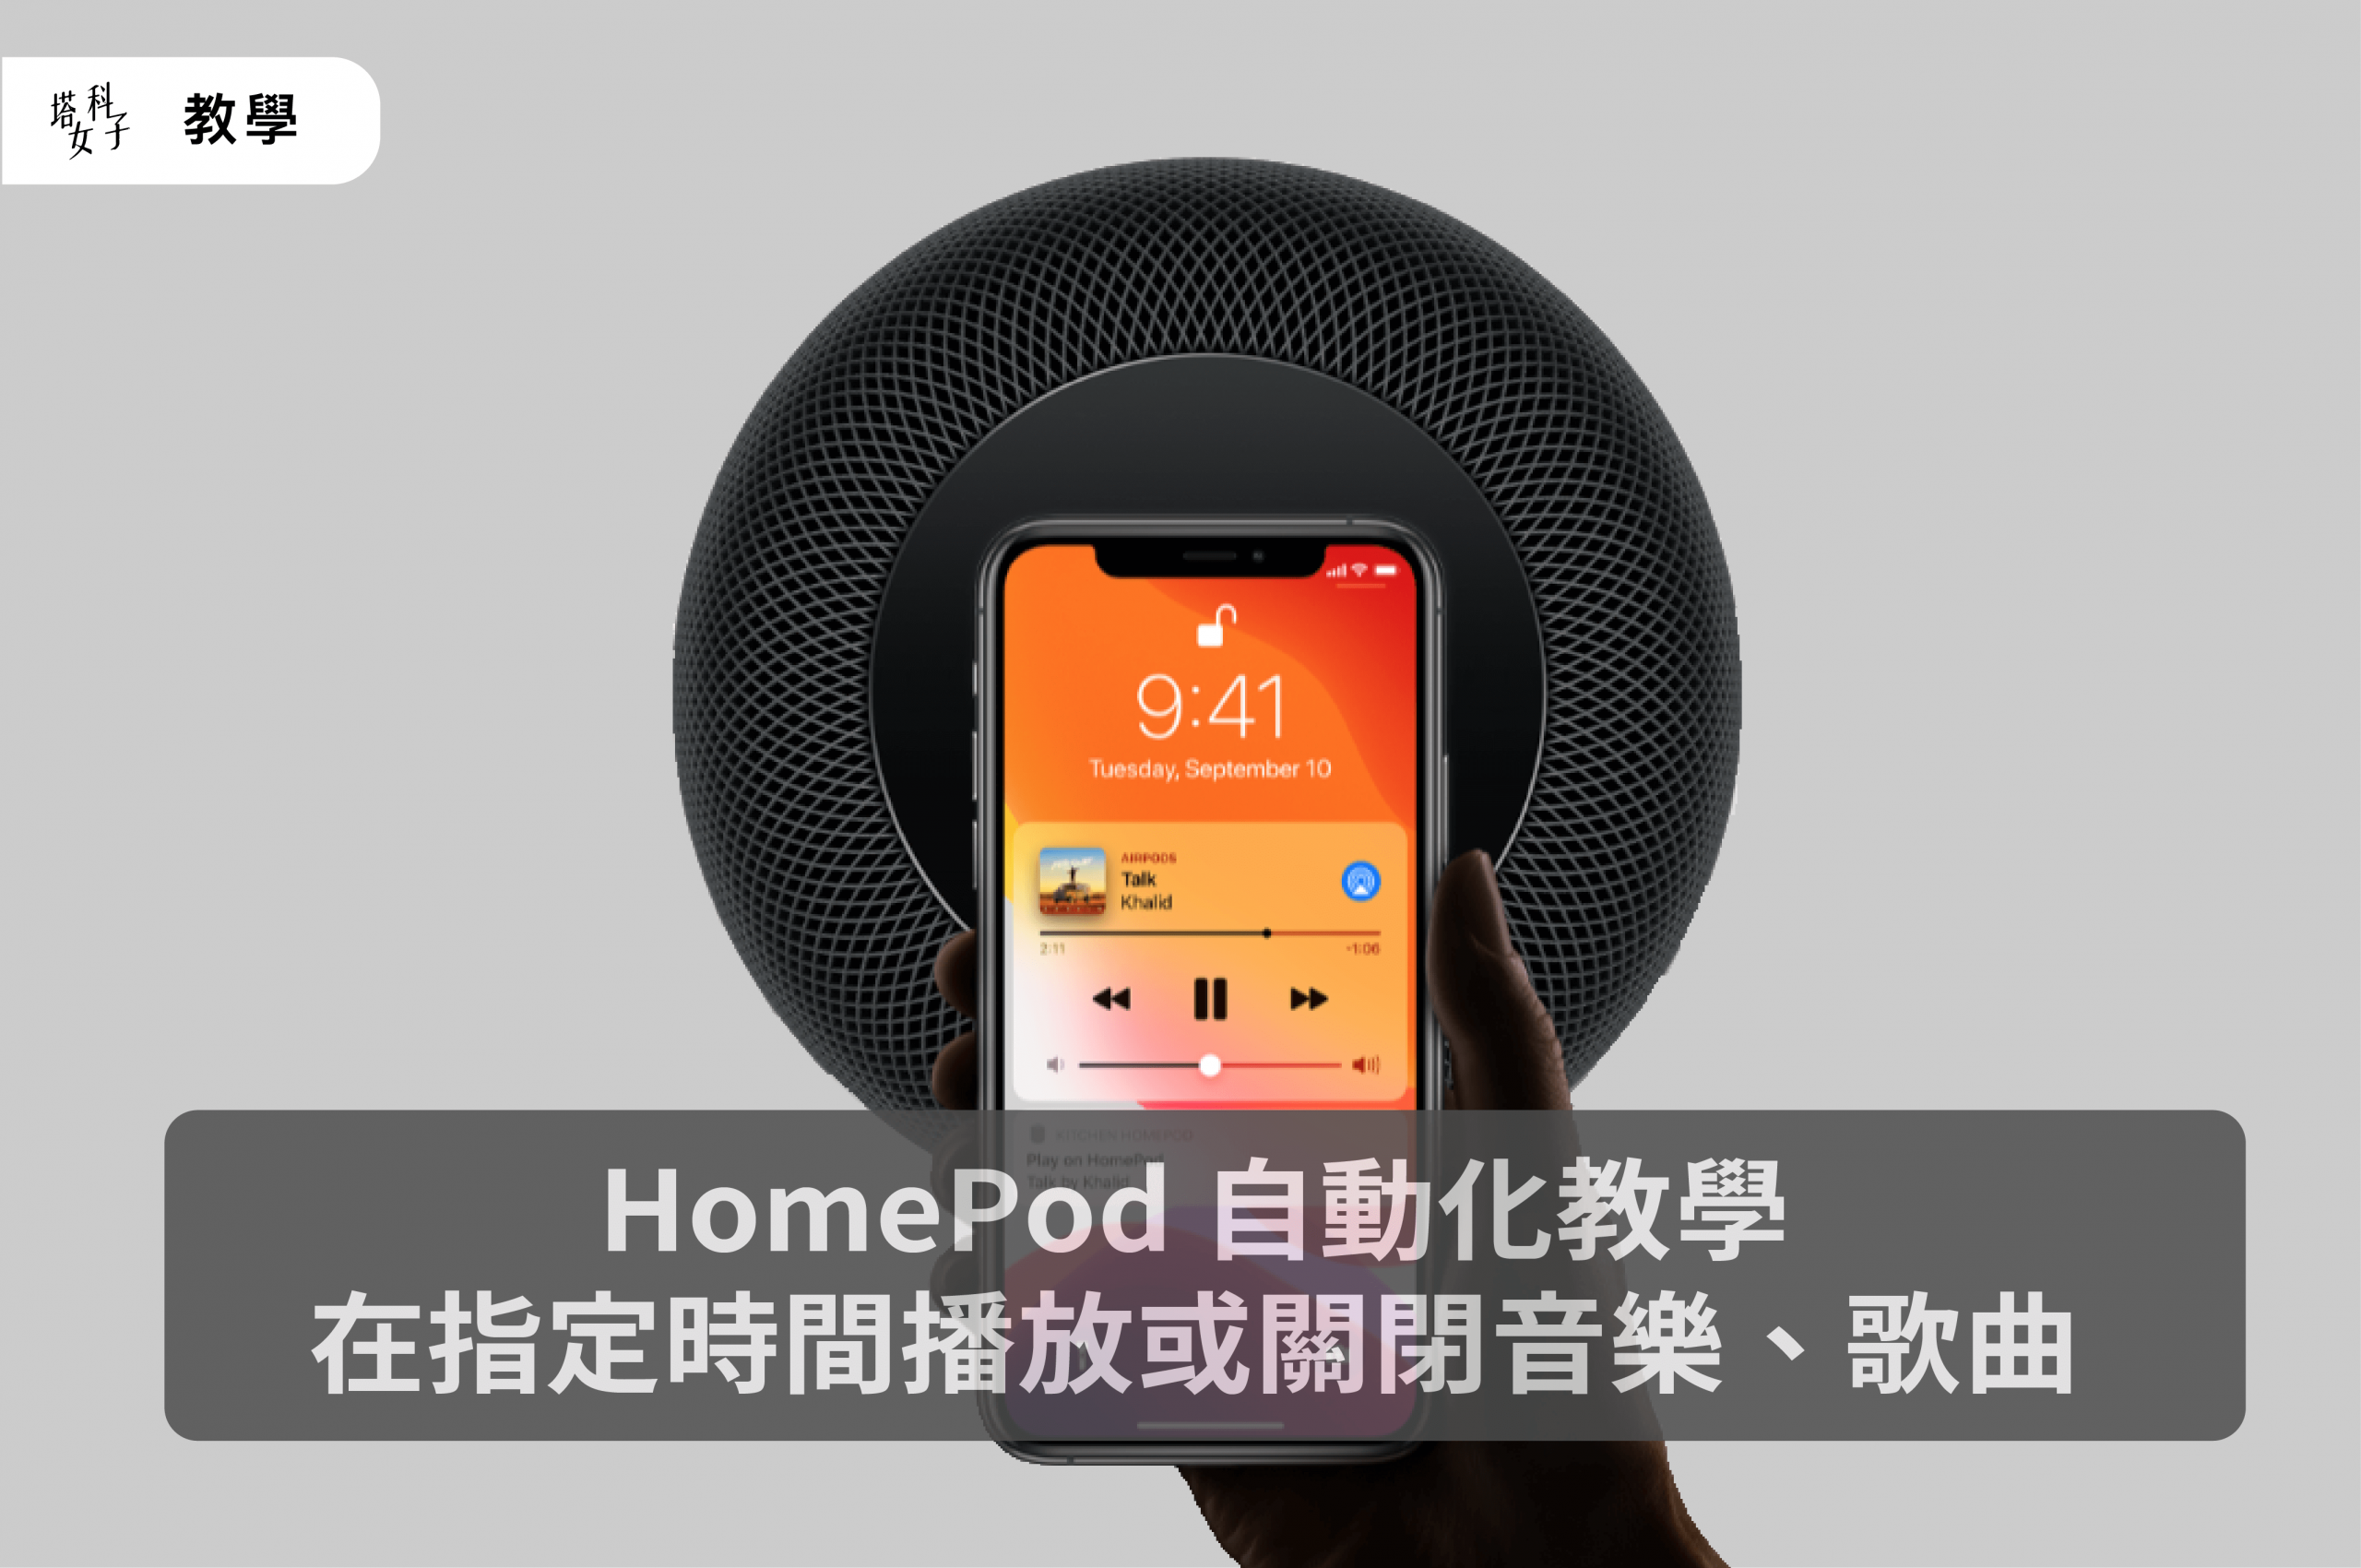 HomePod 自動化教學，在你指定的時間播放或關閉音樂、歌曲